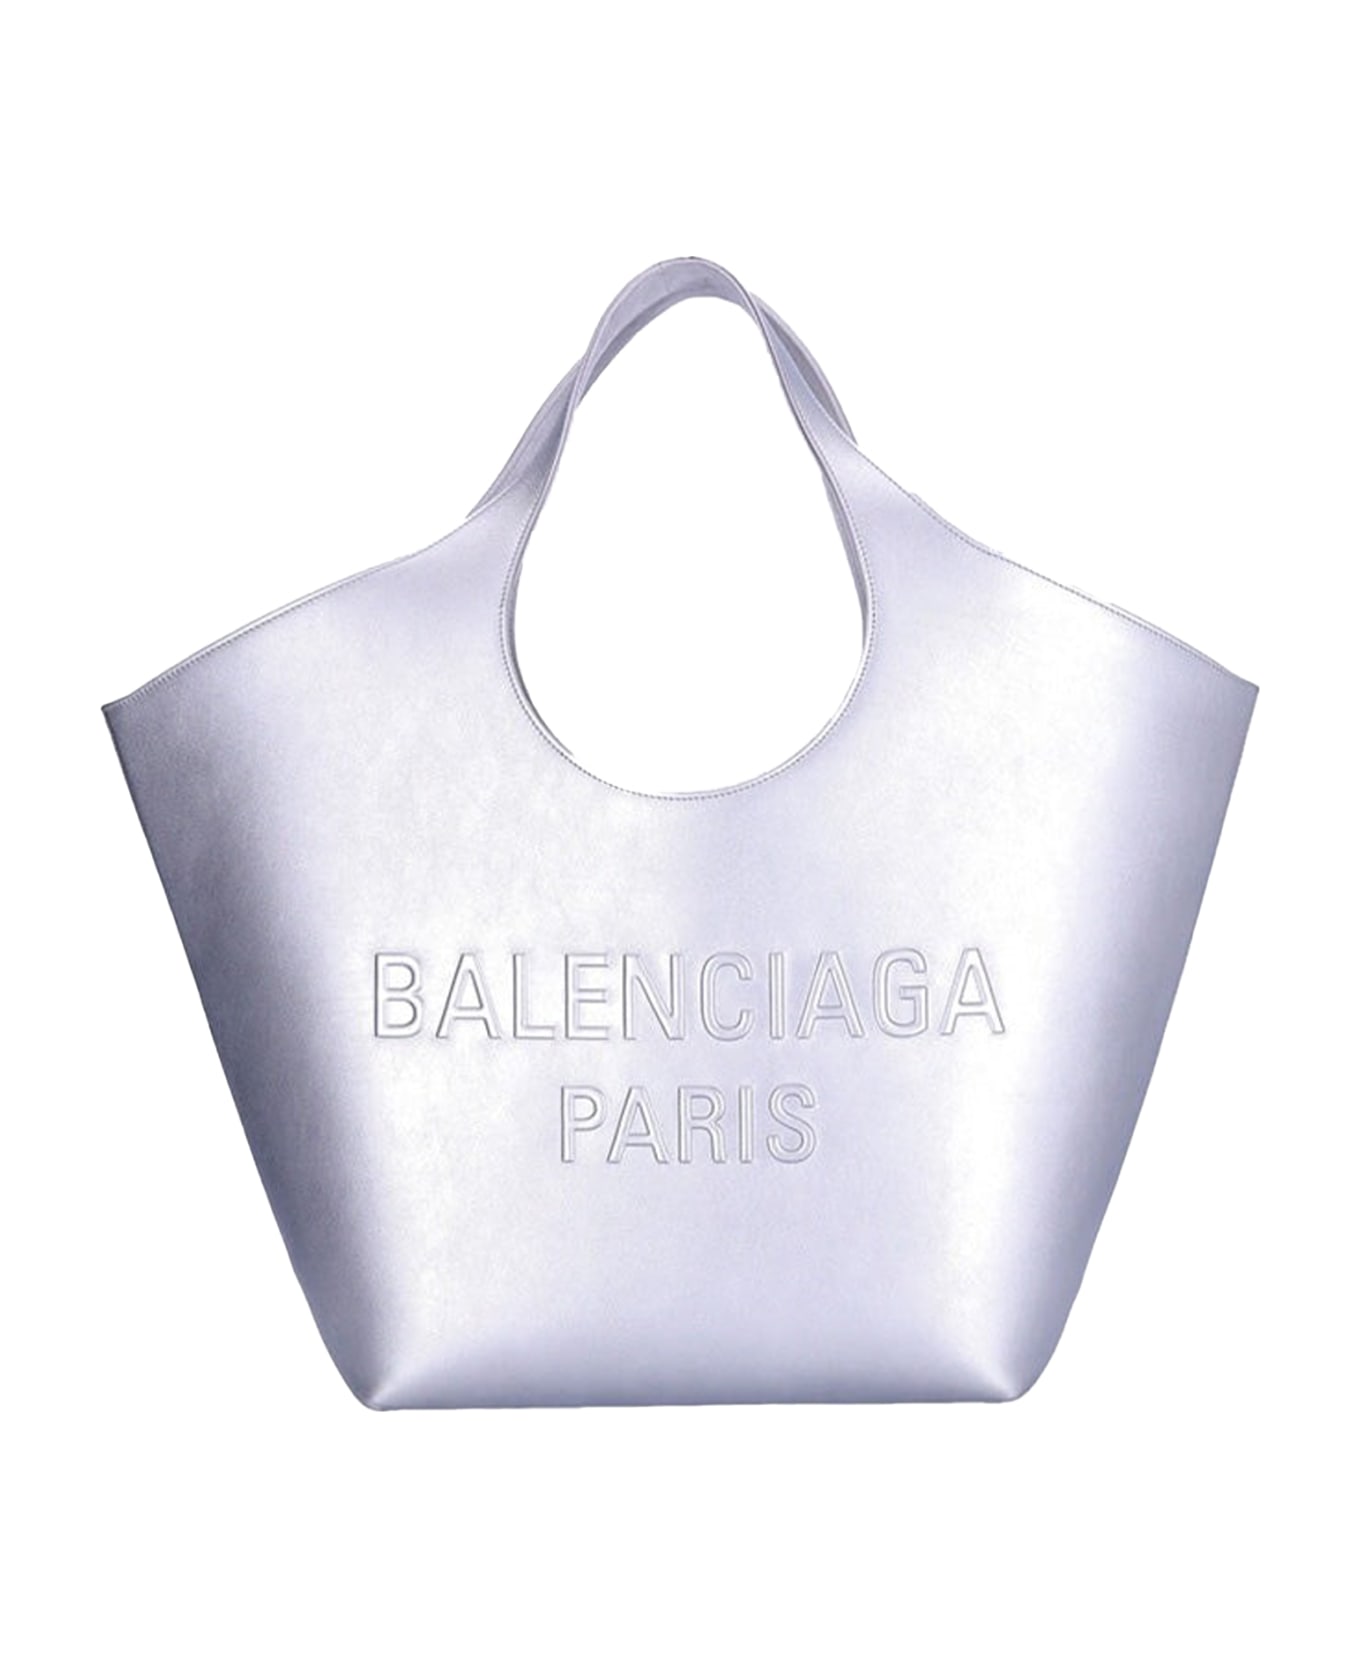 Balenciaga Tote - SILVER トートバッグ